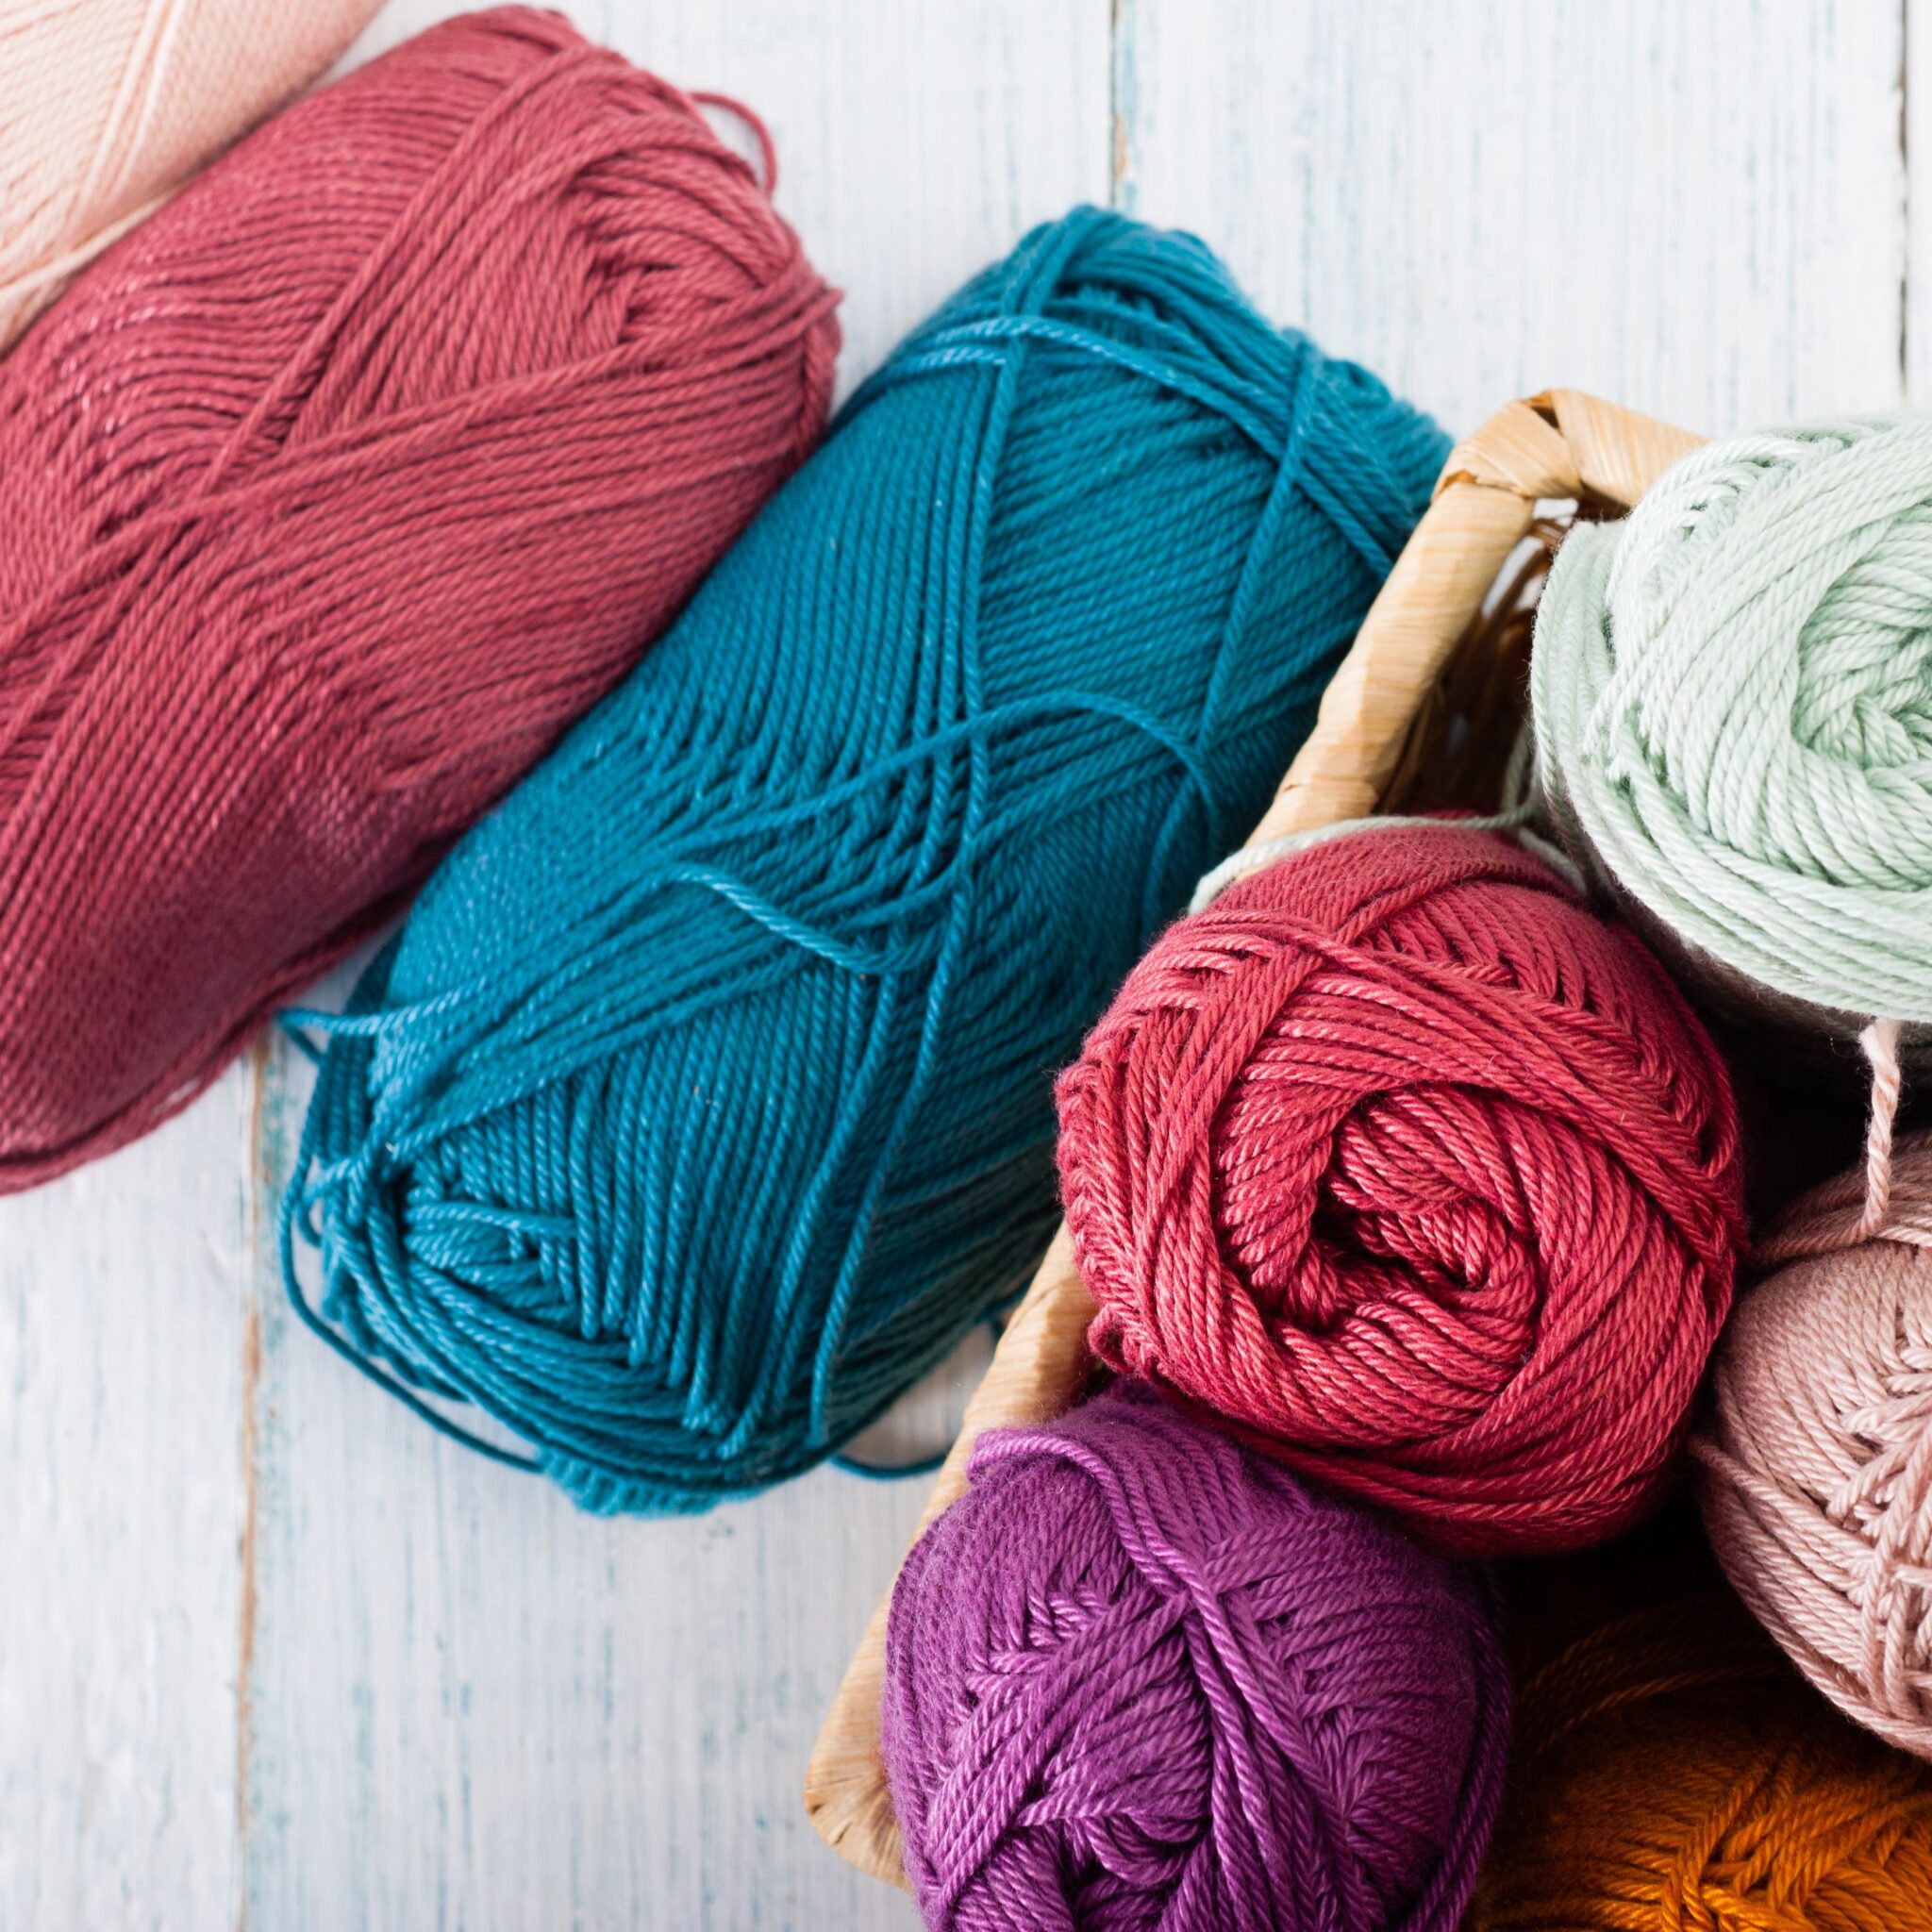 Yarn - ABC Textiles